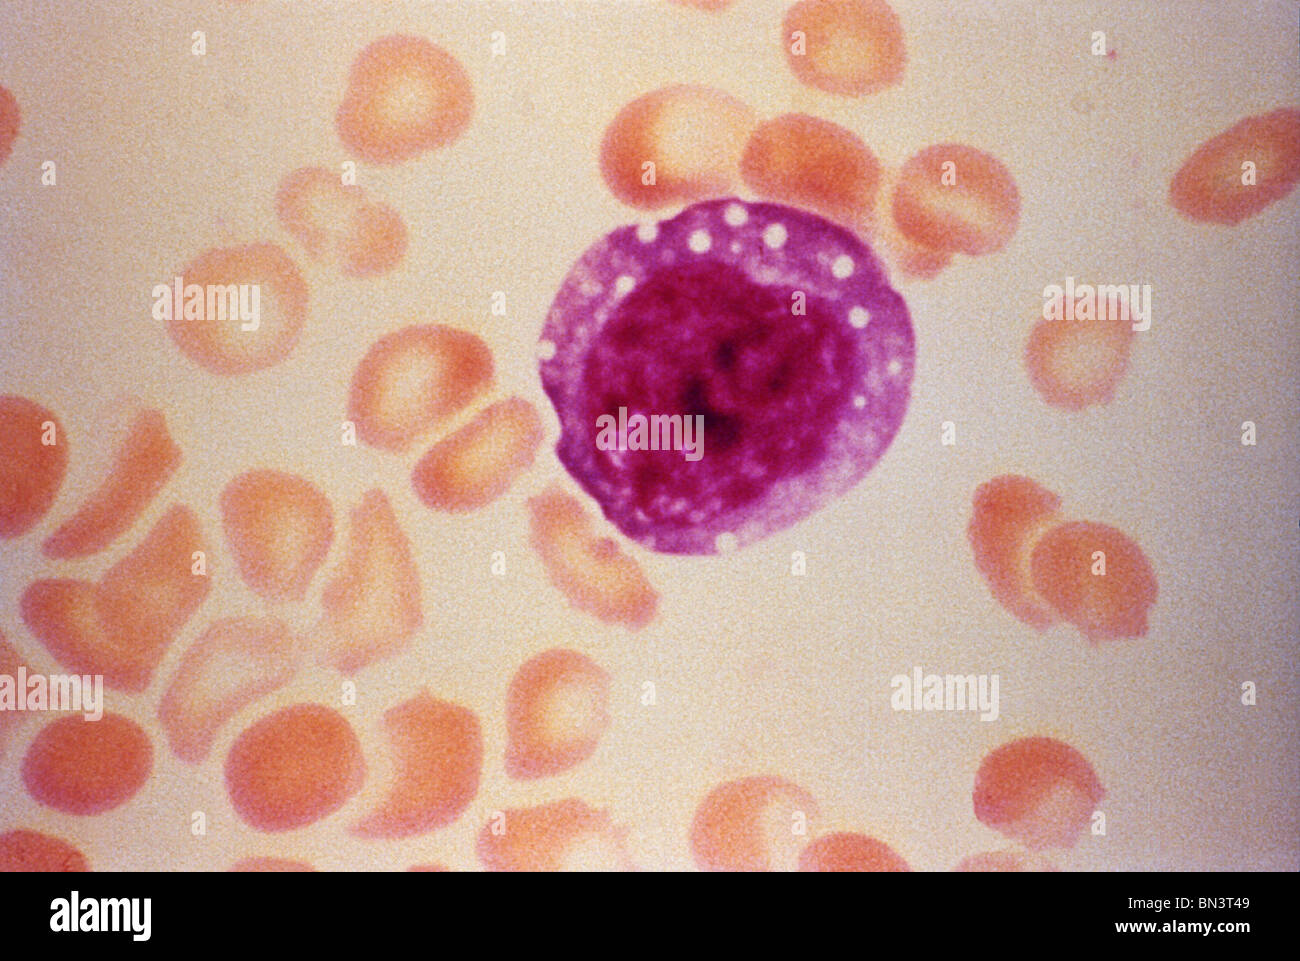 Schliffbild einer atypischen erweiterten Lymphozyten gefunden in der Blutausstrich eines Patienten mit Henoch-Schönlein Purpura (HPS) Stockfoto